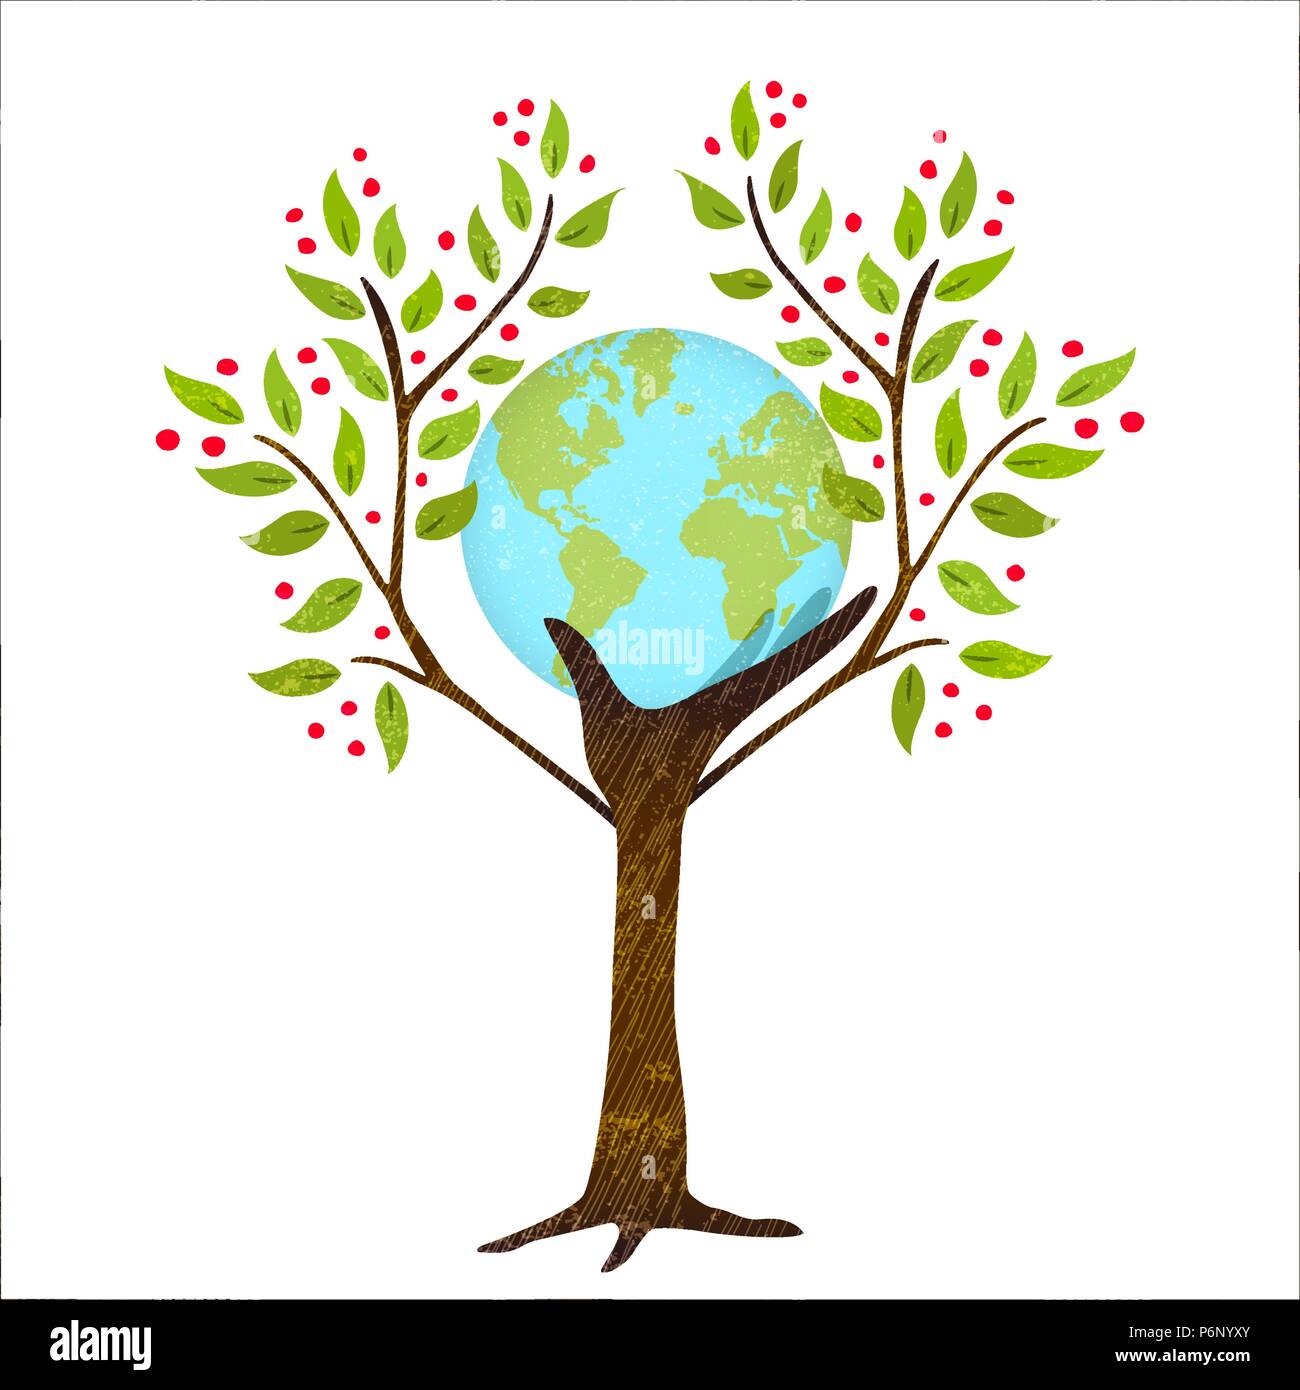 Menschliche Hand Baum holding Green Planet Erde. Umwelt Care Concept für die Natur helfen. EPS 10 Vektor. Stock Vektor